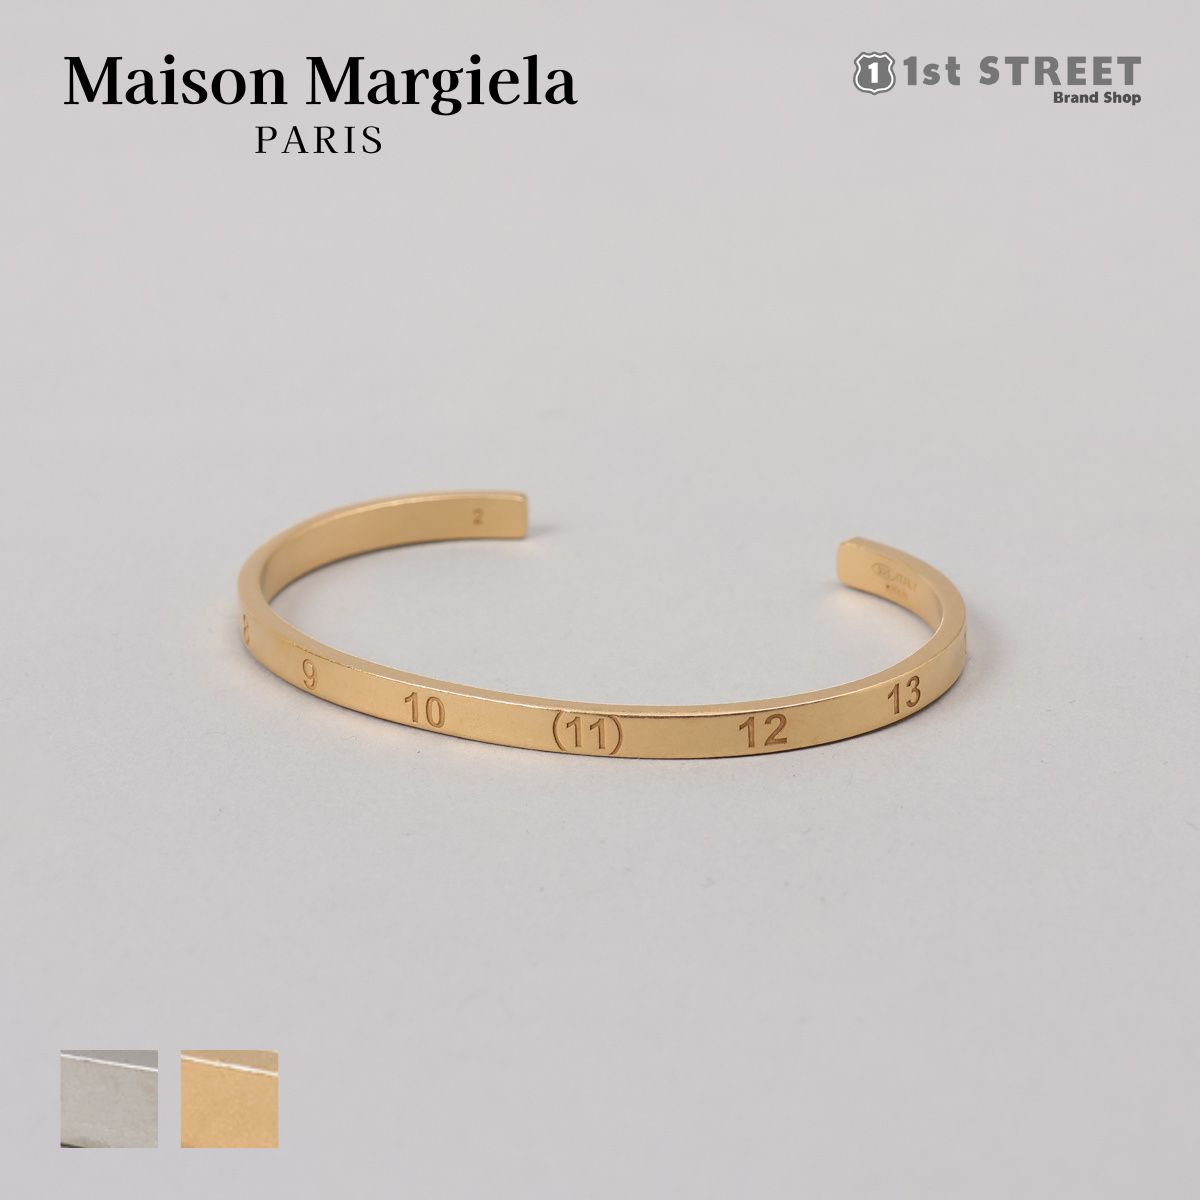 Maison Margielaの「ナンバリング・バングル」。マルジェラならではのナンバーロゴが刻印されています。 DETAIL アイテム詳細ブレスレット ブランド名MAISON MARGIELA シーズン2023AW カラー951 SILVER(シルバー)950 YELLOW GOLD PLATING BURATTATO(ゴールド) サイズ詳細1【2】内周13cm【3】内周13.5cm サイズ詳細2- 重量- 素材シルバー 原産国イタリア 仕様1- 仕様2- メーカー商品名Cuff メーカー品番SI8UY0002 ご注意・画像と実際の商品は、個体差により若干異なる場合がございますので、予めご了承下さい。・本製品は海外メーカーからの並行輸入品となり、全て本物かつ新品の商品でございます。・稀に商品の保存箱・袋に破損（折れ、へこみ、破れ、汚れ等）などが見られる場合がございますが、初期不良対象外とさせて頂きます。こちらを理由とした返品交換・キャンセル等はお受けしておりませんので、予めご了承ください。 キーワードギフト プレゼント ラッピング 誕生日 お祝い ブランド トレンドITEM IMAGES 関連アイテム ＜＜MAISON MARGIELA 商品一覧はこちら＞＞ ＜＜ブレスレット 商品一覧はこちら＞＞